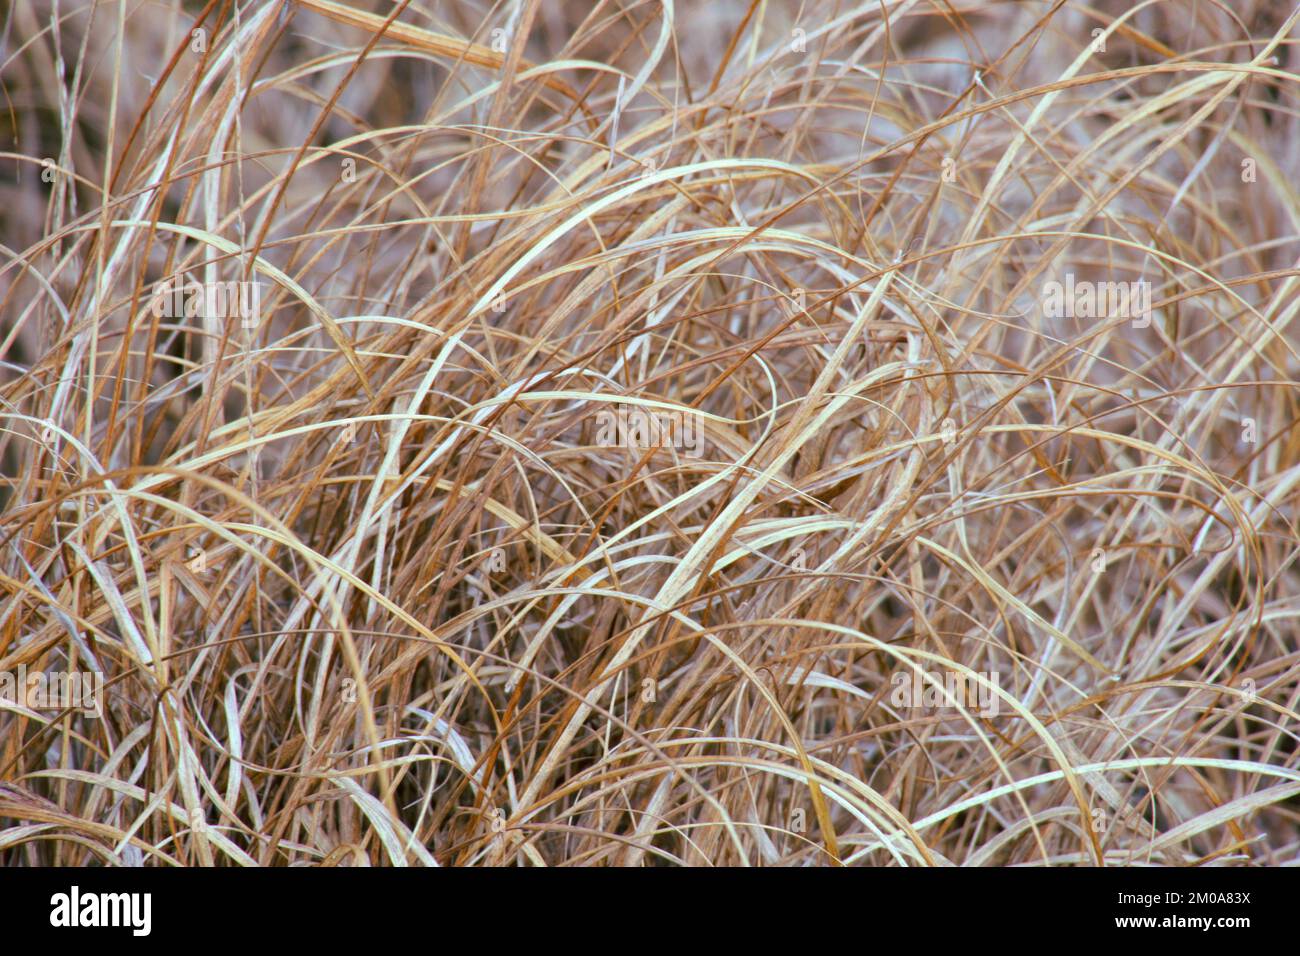 Herbe vivace qui brille en hiver dans les wilds de Cannock Chase heathland Staffordshire en janvier Banque D'Images